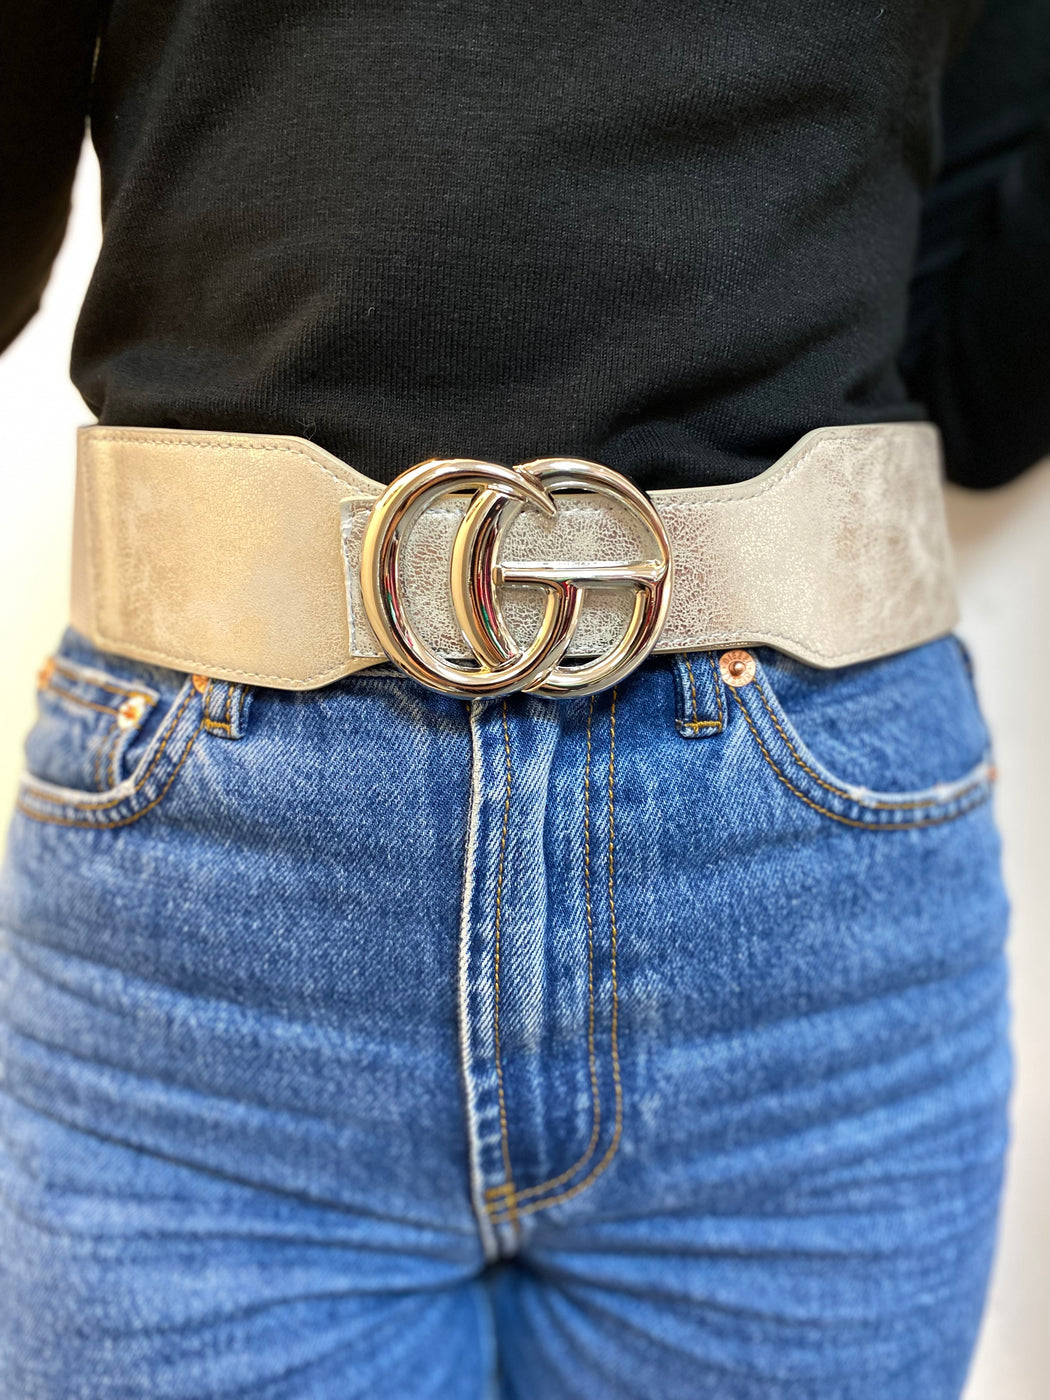 Giana silver belt